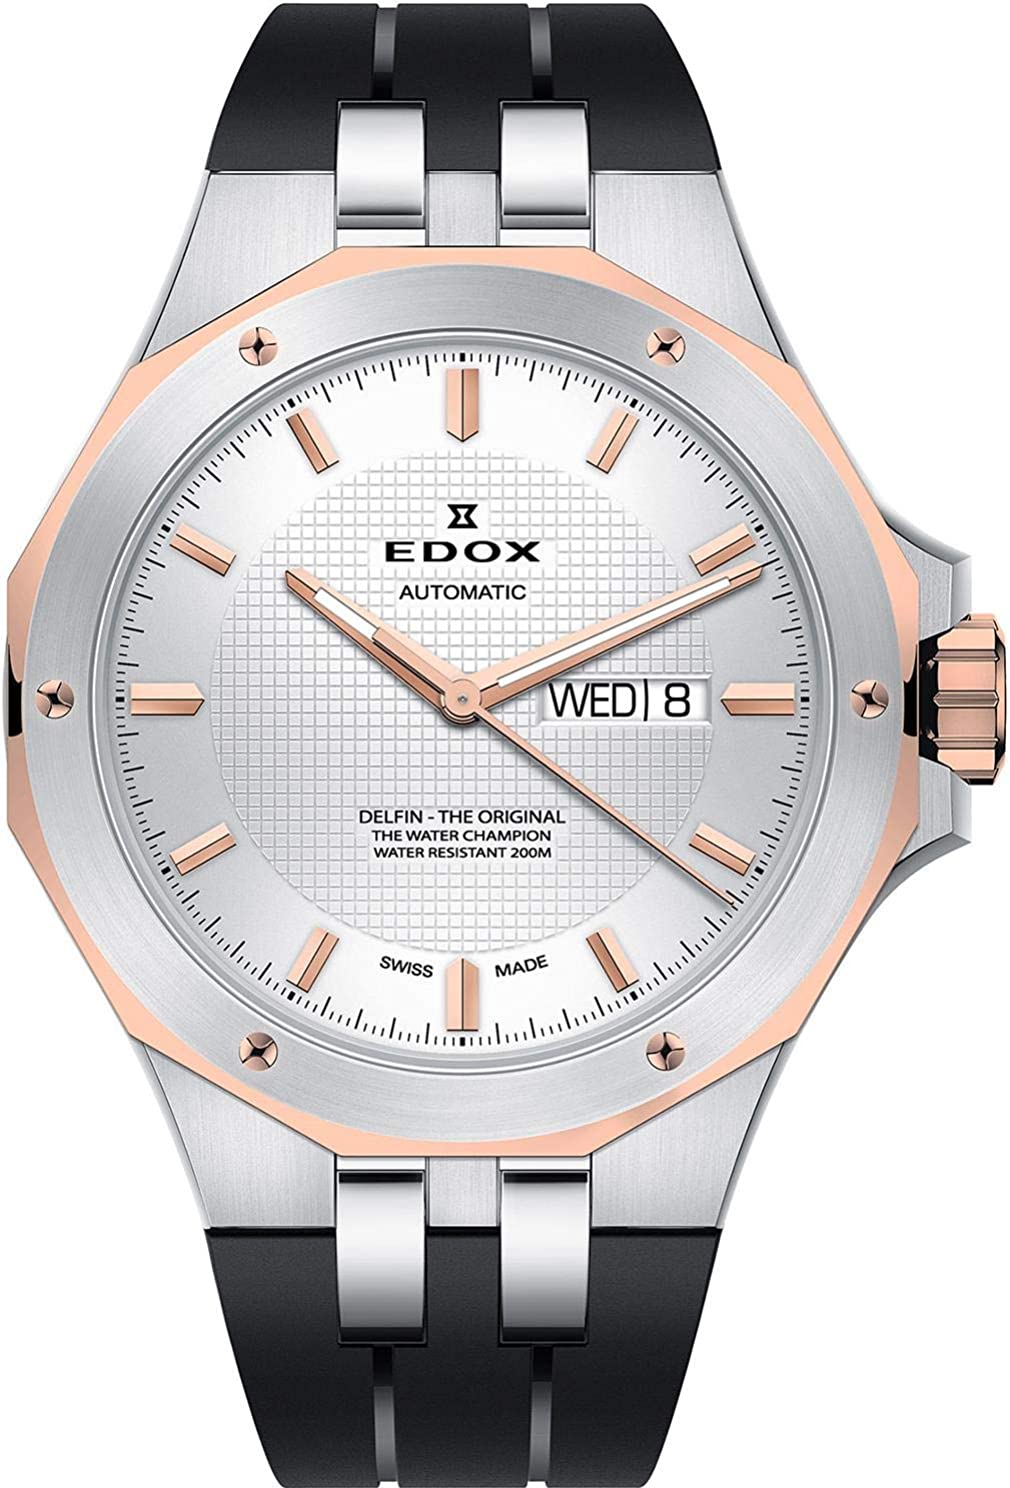 Edox watch battery replacement